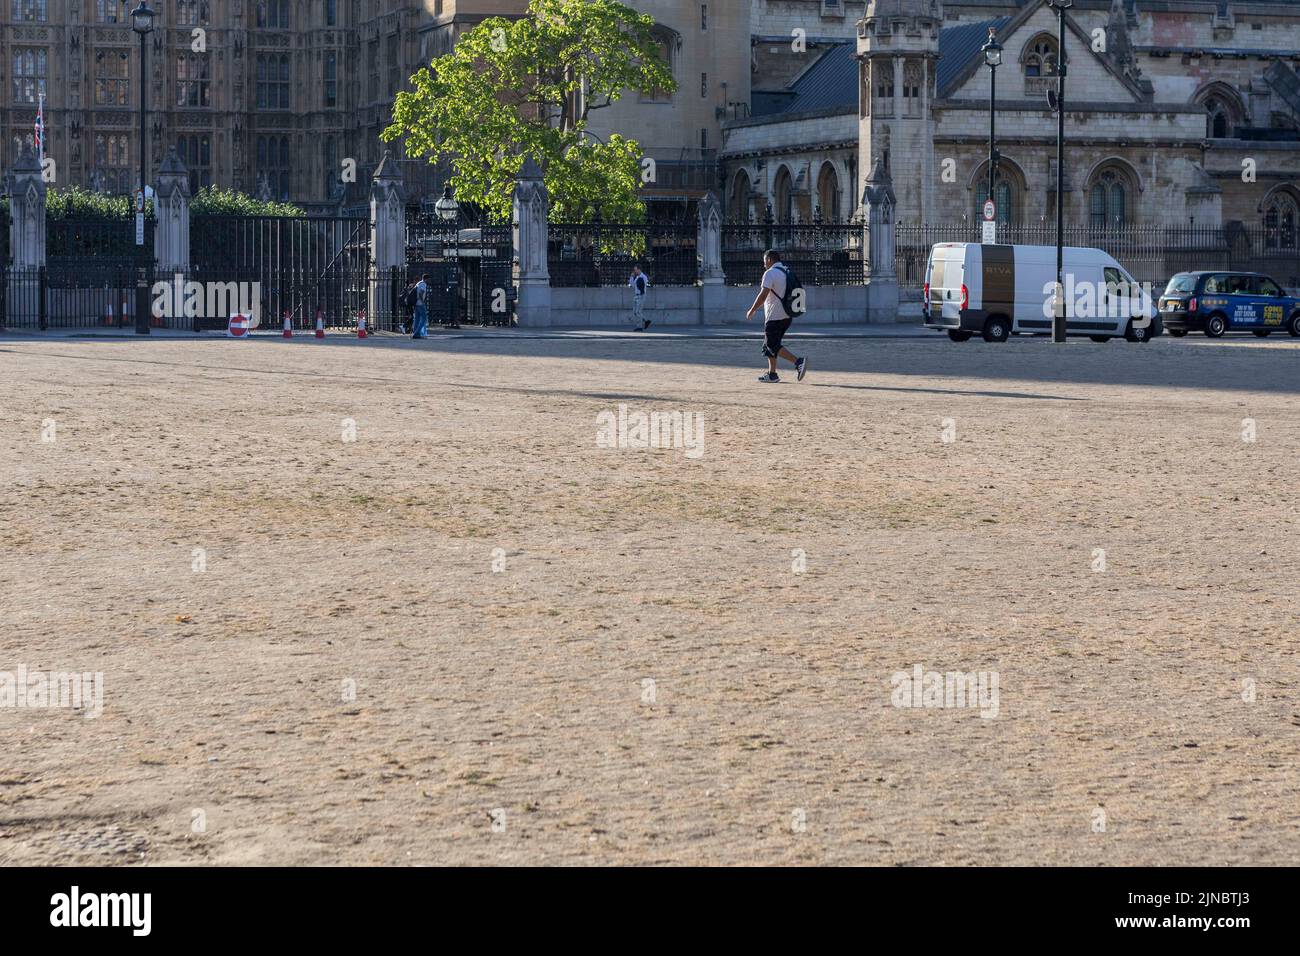 Heute Morgen wird auf dem Parliament Square Gras ausgetrockelt. Großbritannien erlebt derzeit trockenes Wetter. Bild aufgenommen am 4.. August 2022. © Belinda Jiao Stockfoto